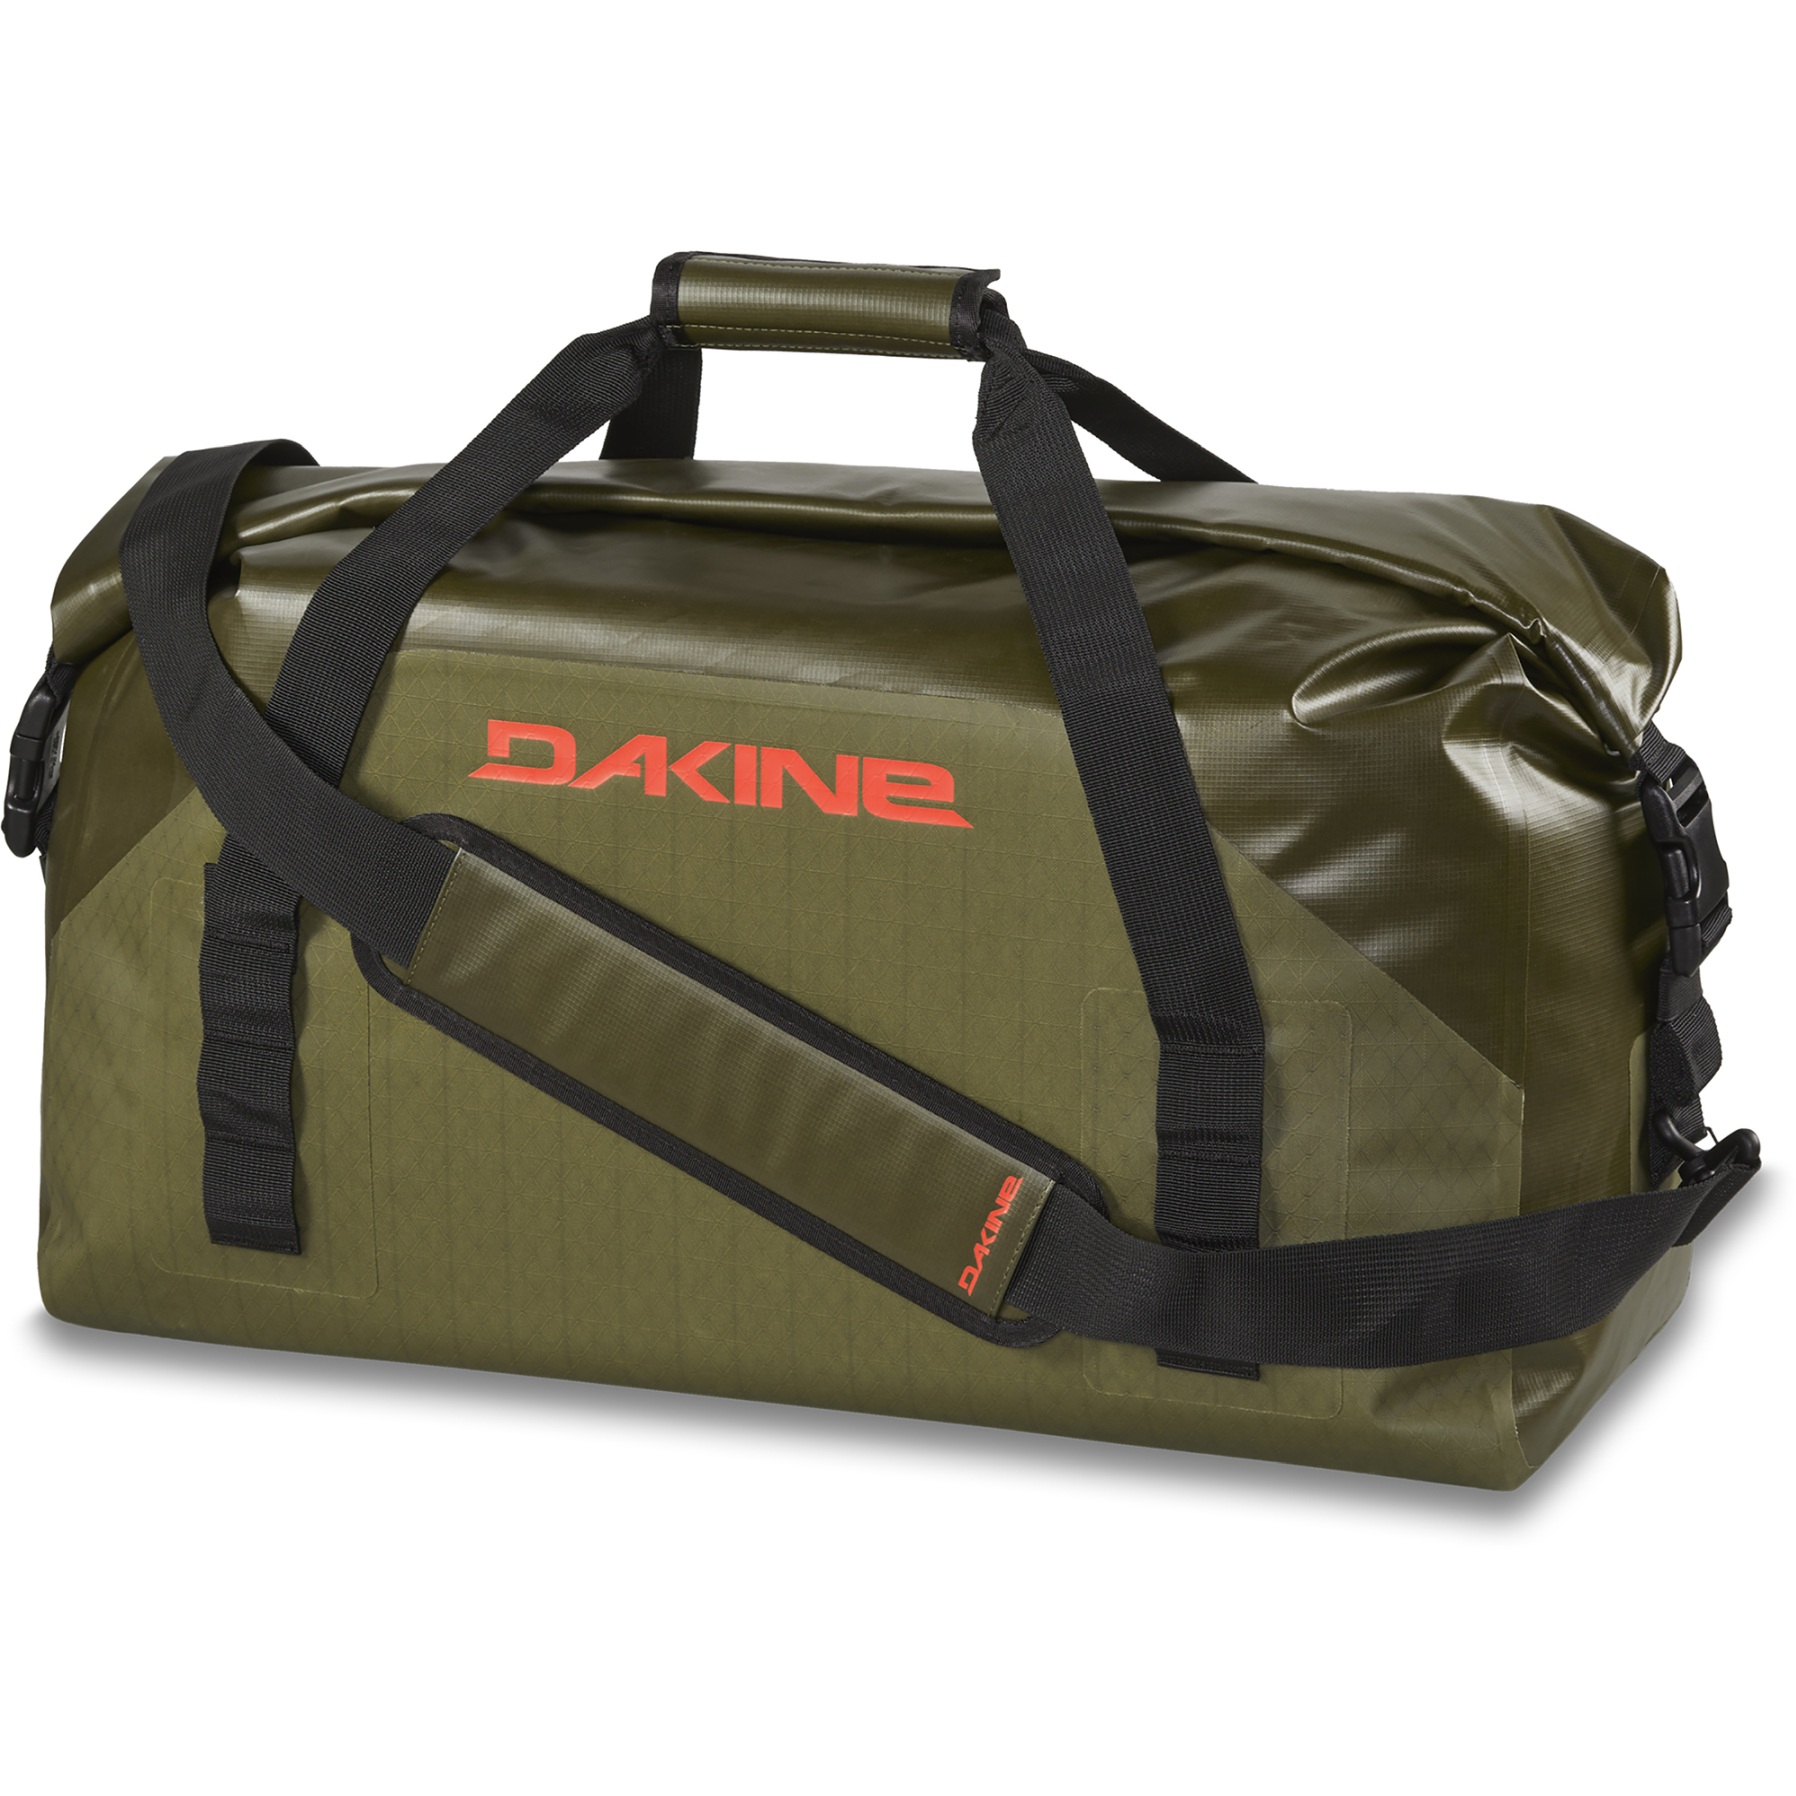 Produktbild von Dakine Cyclone Wet/Dry Rolltop Sporttasche 60L - dark olive